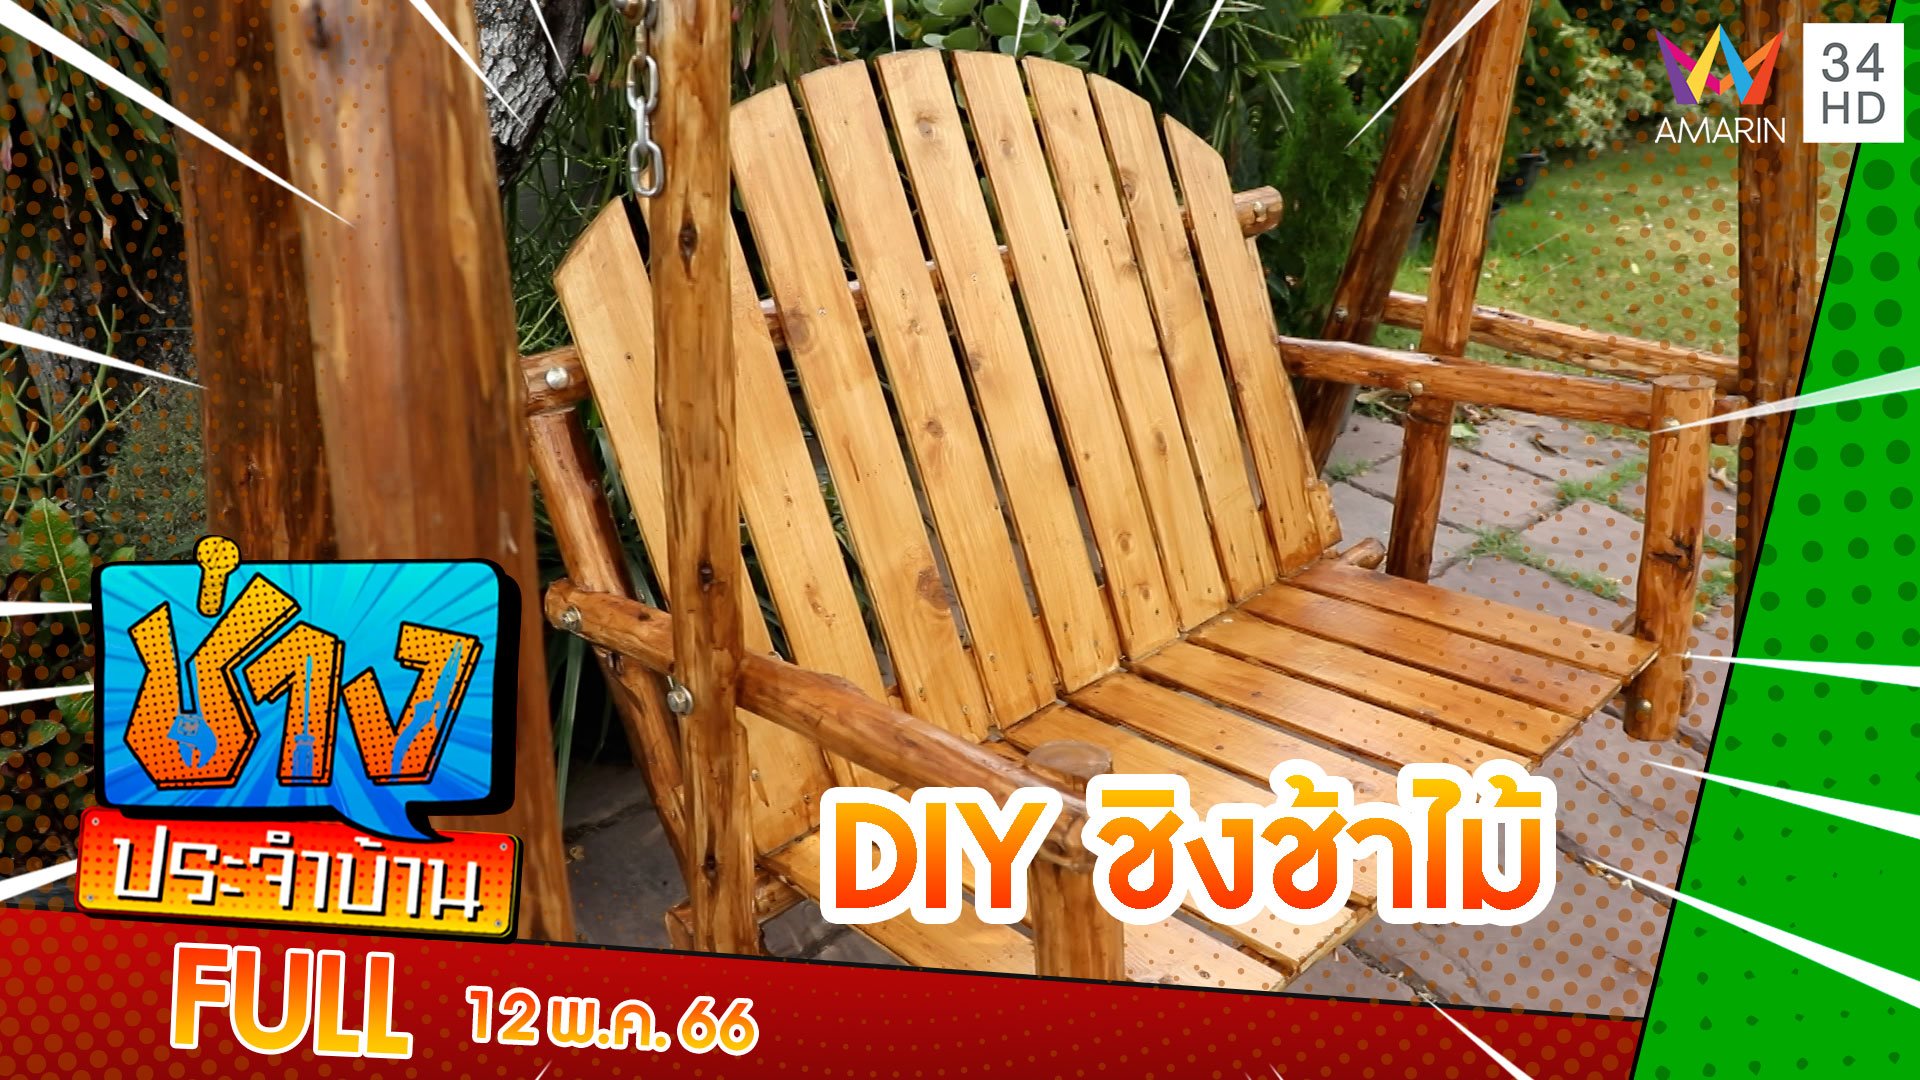 DIY ชิงช้าไม้ | ช่างประจำบ้าน | 13 พ.ค. 66 | AMARIN TVHD34